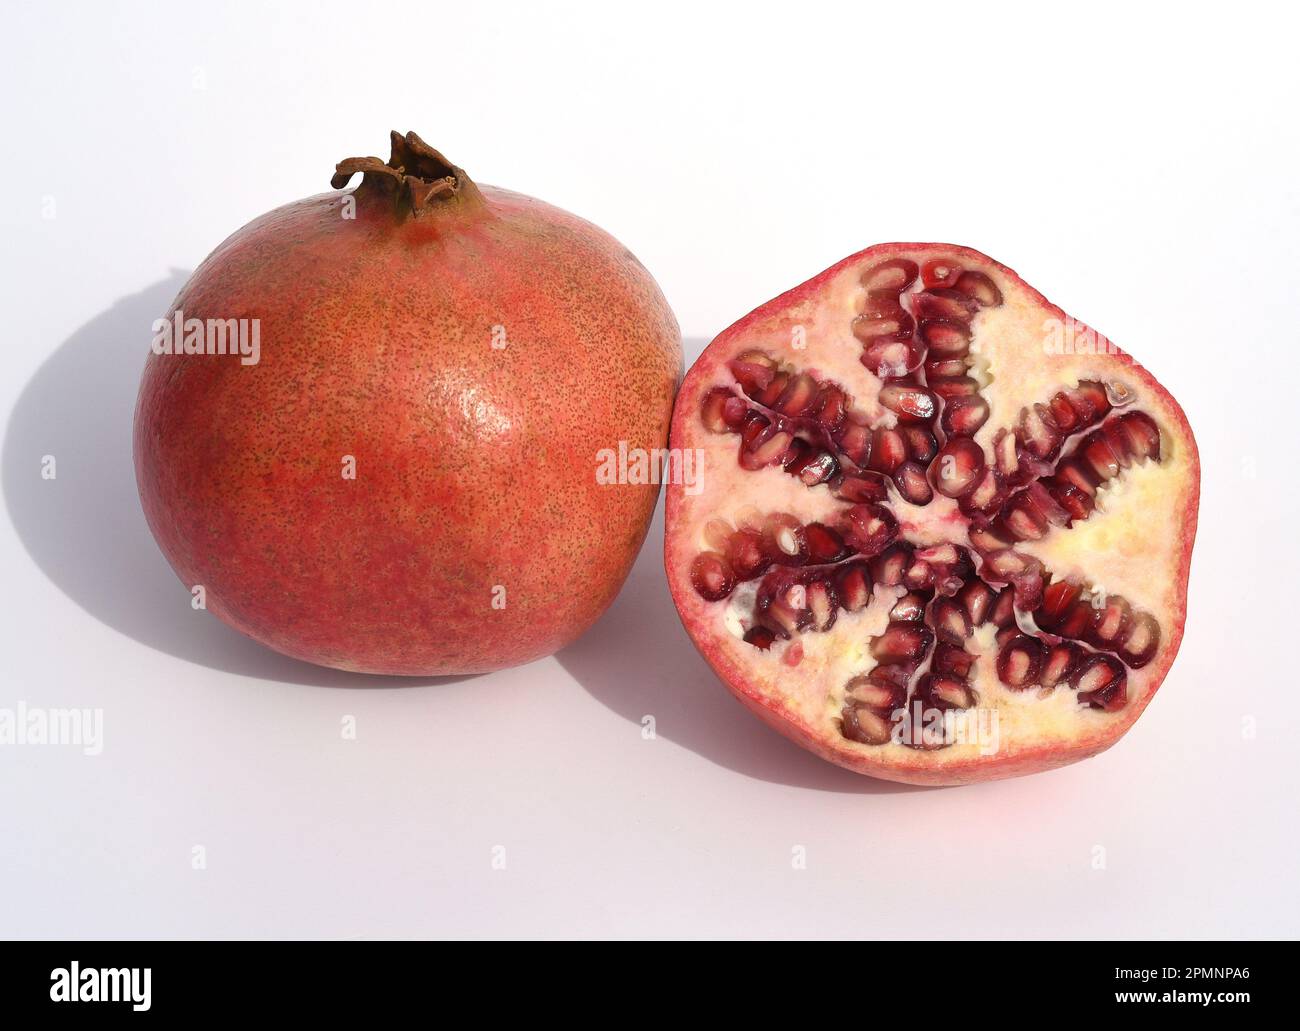 Granatapfel Punica granatumist eine sehr alte Zier- und Nutzpflanze mit leckeren Fruechten. Grenade Punica granatum est un très vieux ornemental et u Banque D'Images